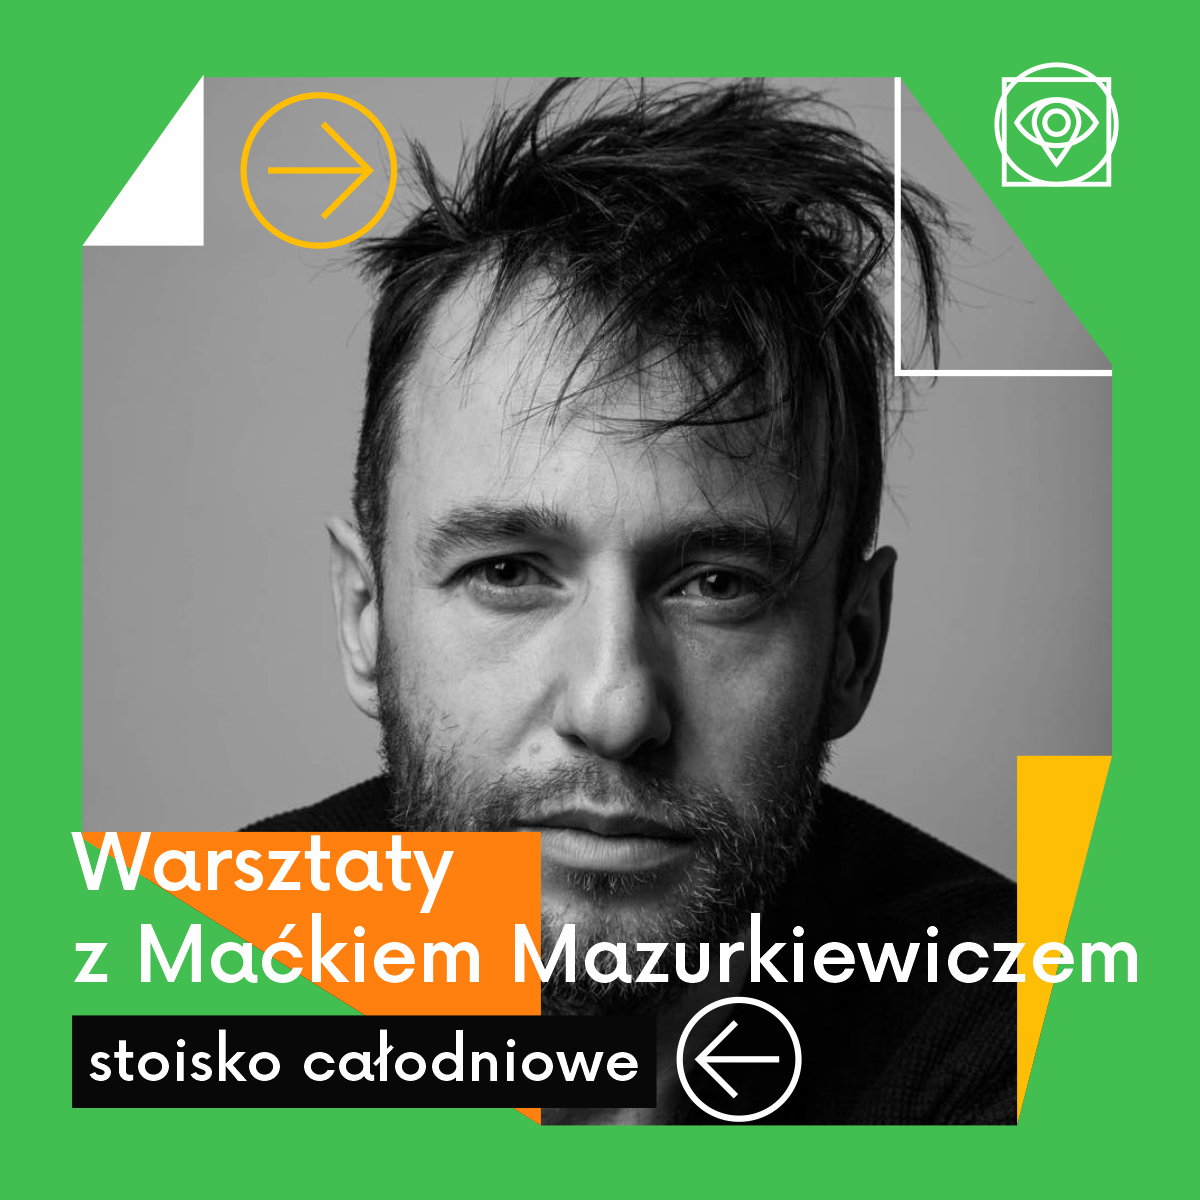 infografika promująca spotkanie z Maciejem Mazurkiewiczem